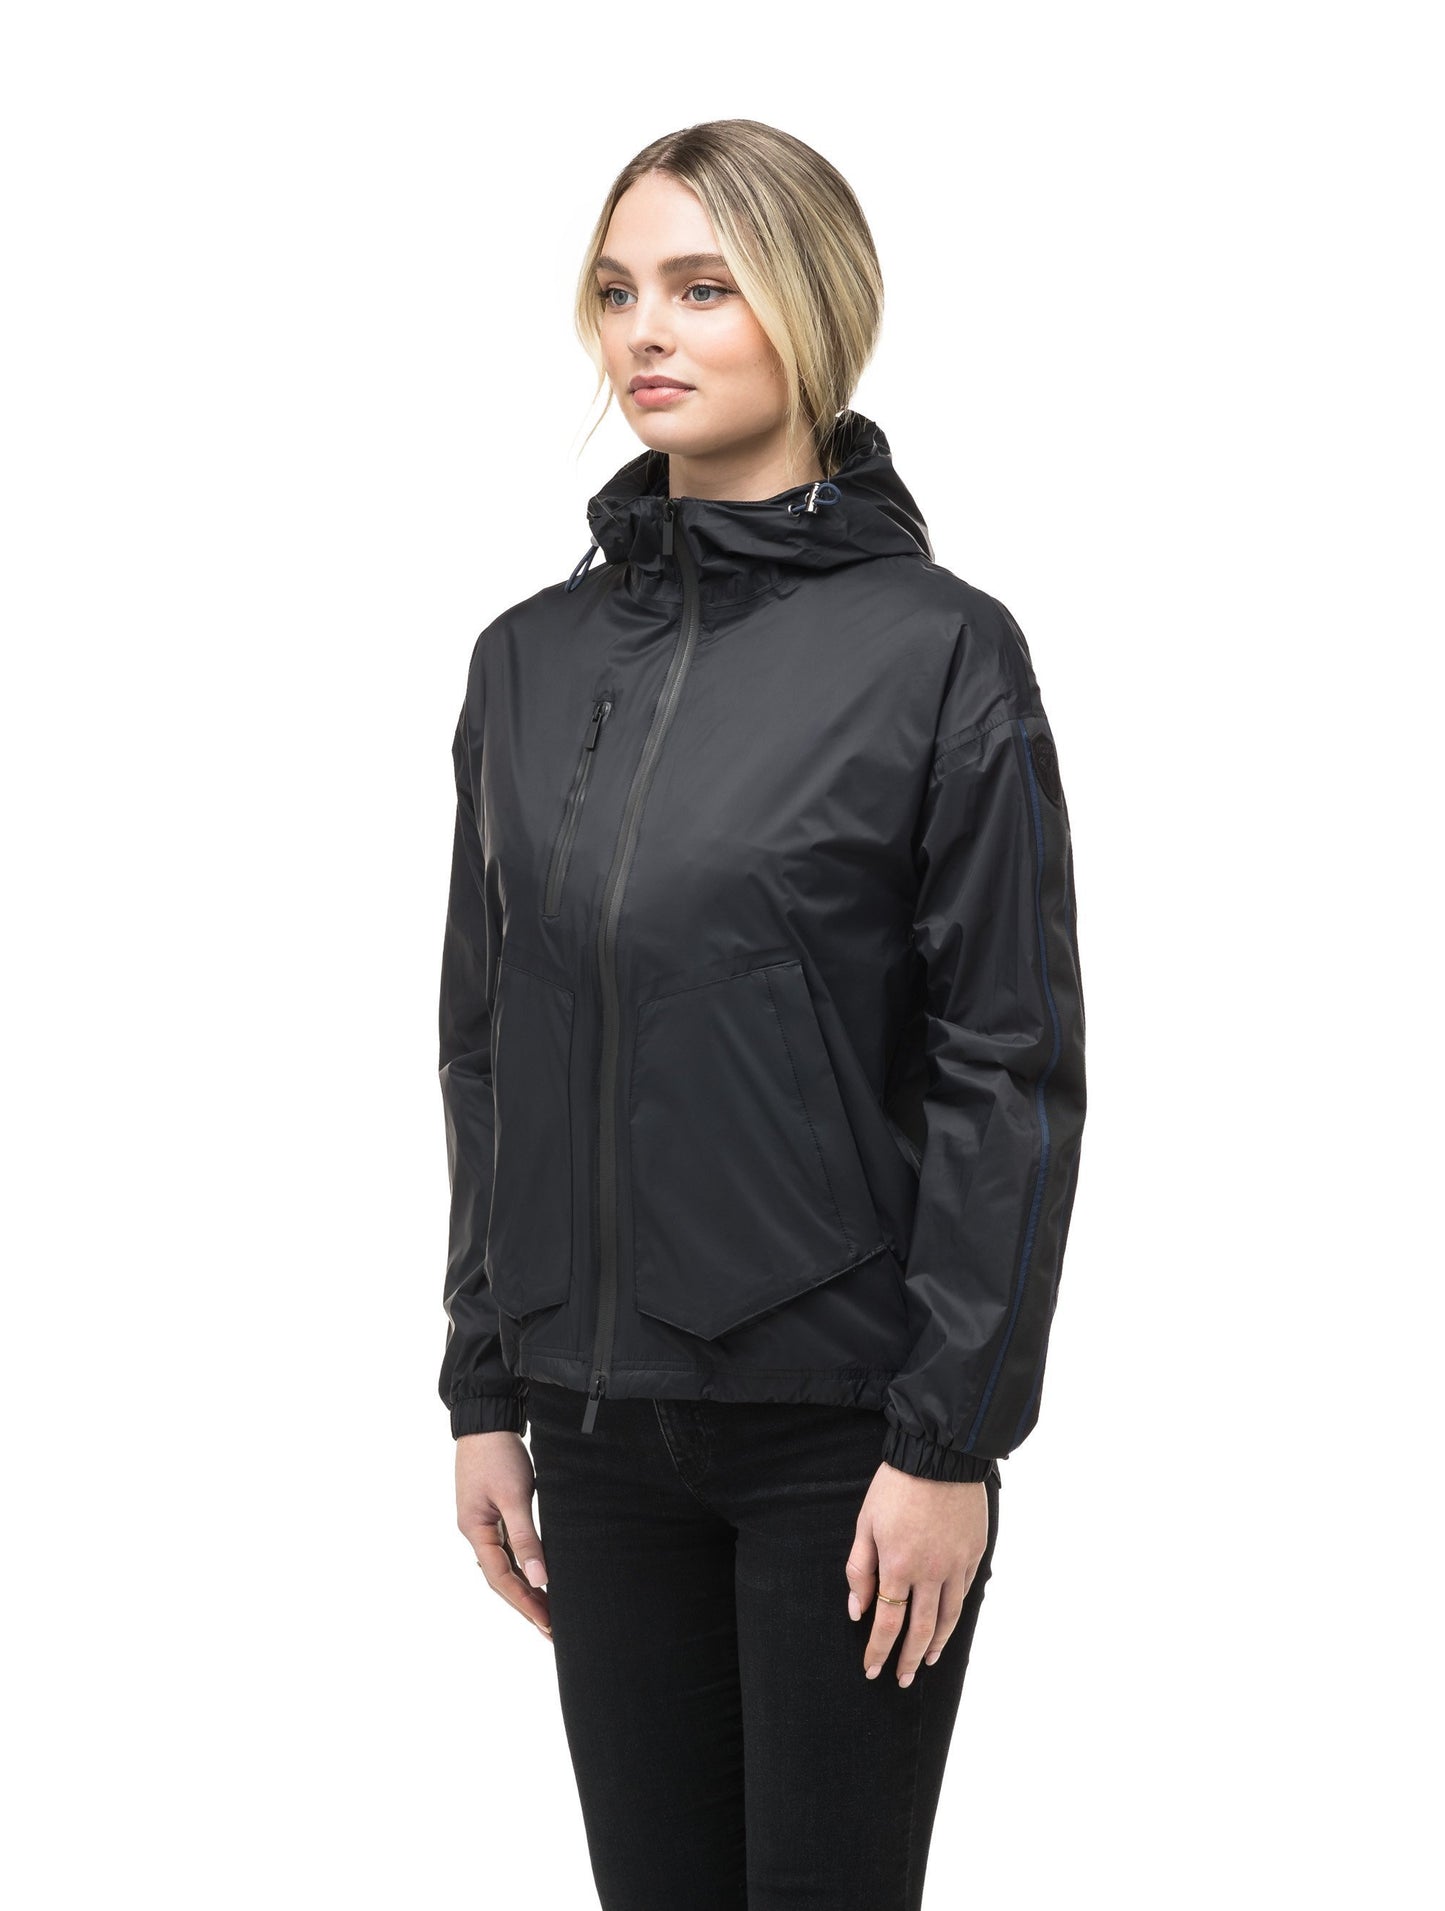 Women's waist length windbreaker with hood in Black